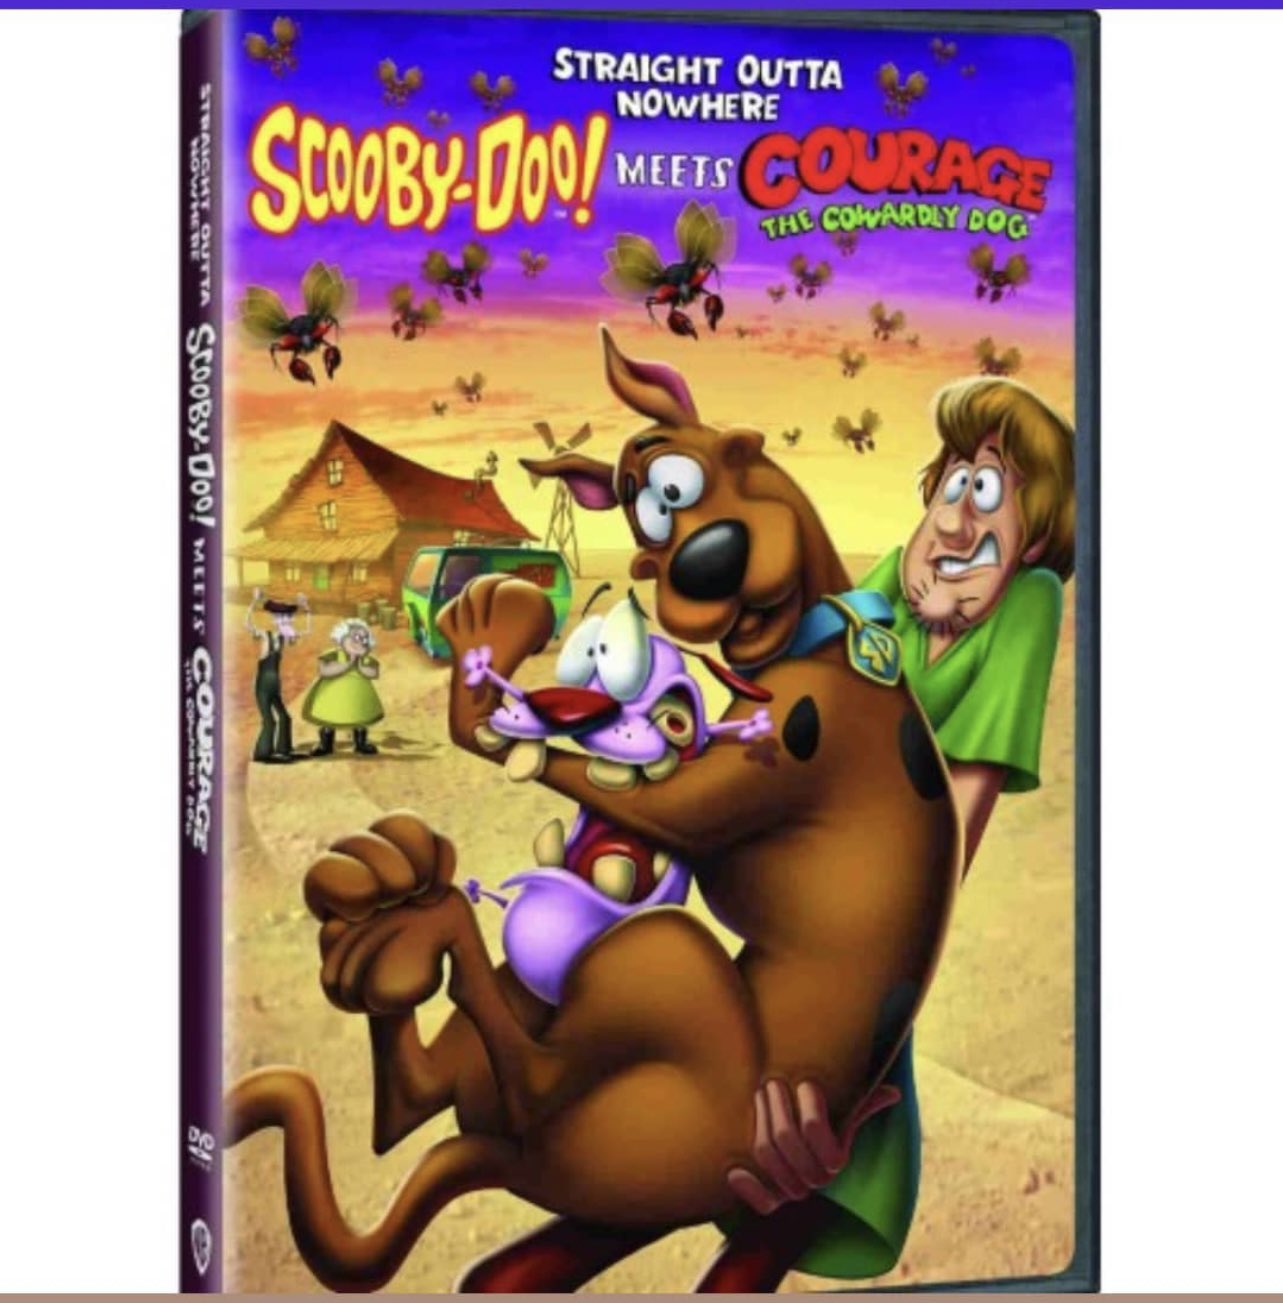 Se Filtra portada de la película Crossover entre Scooby Doo y Coraje el perro cobarde llamada "Straight Outta Nowhere"